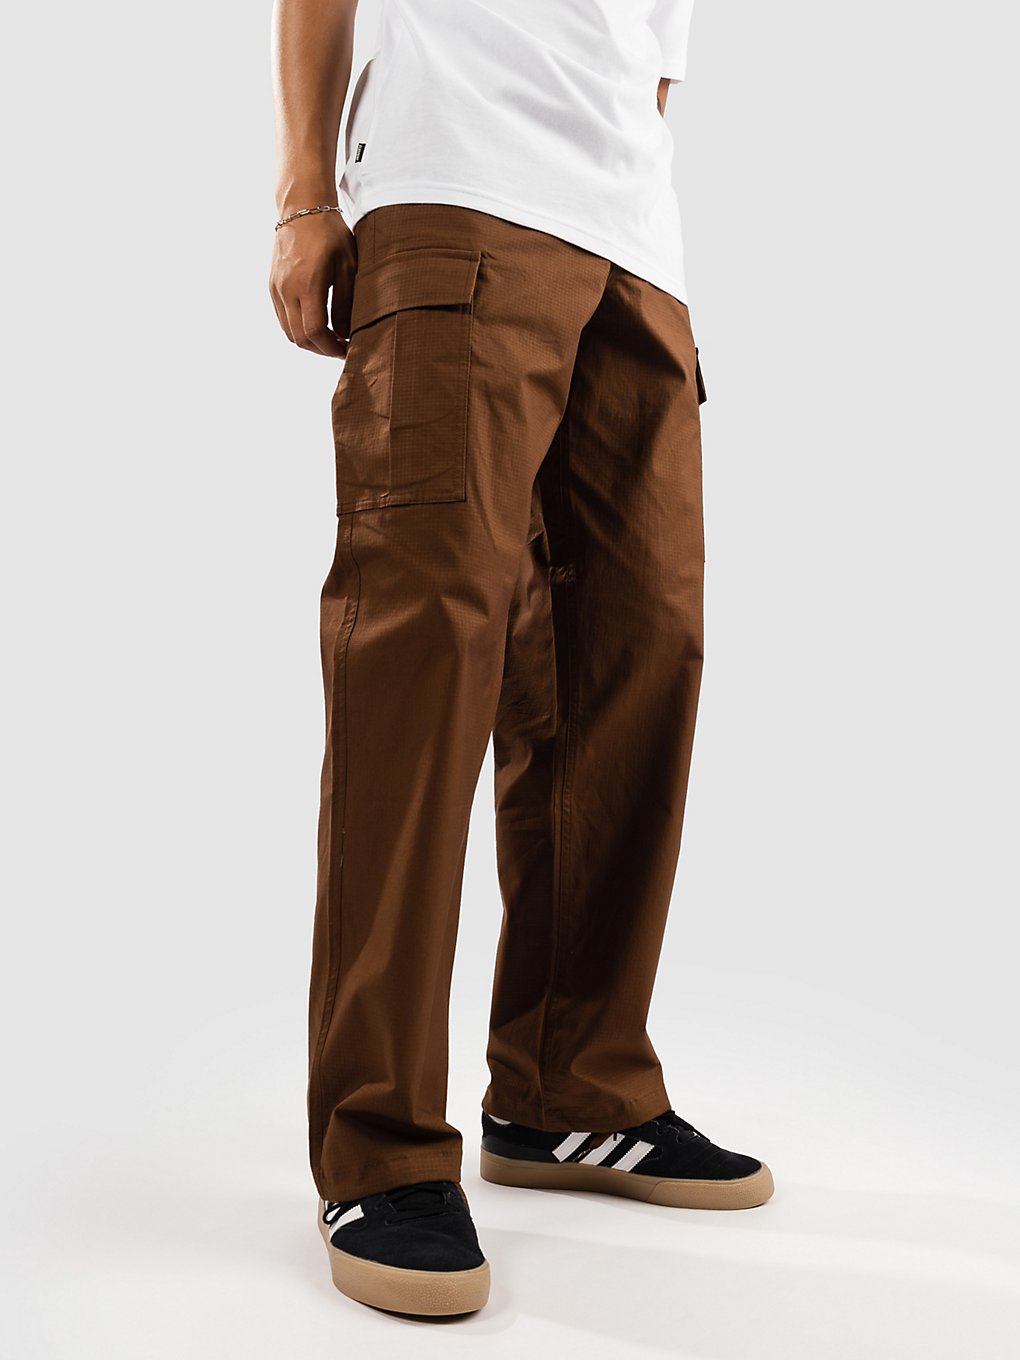 Nike Kearny Cargo Pantalon marron